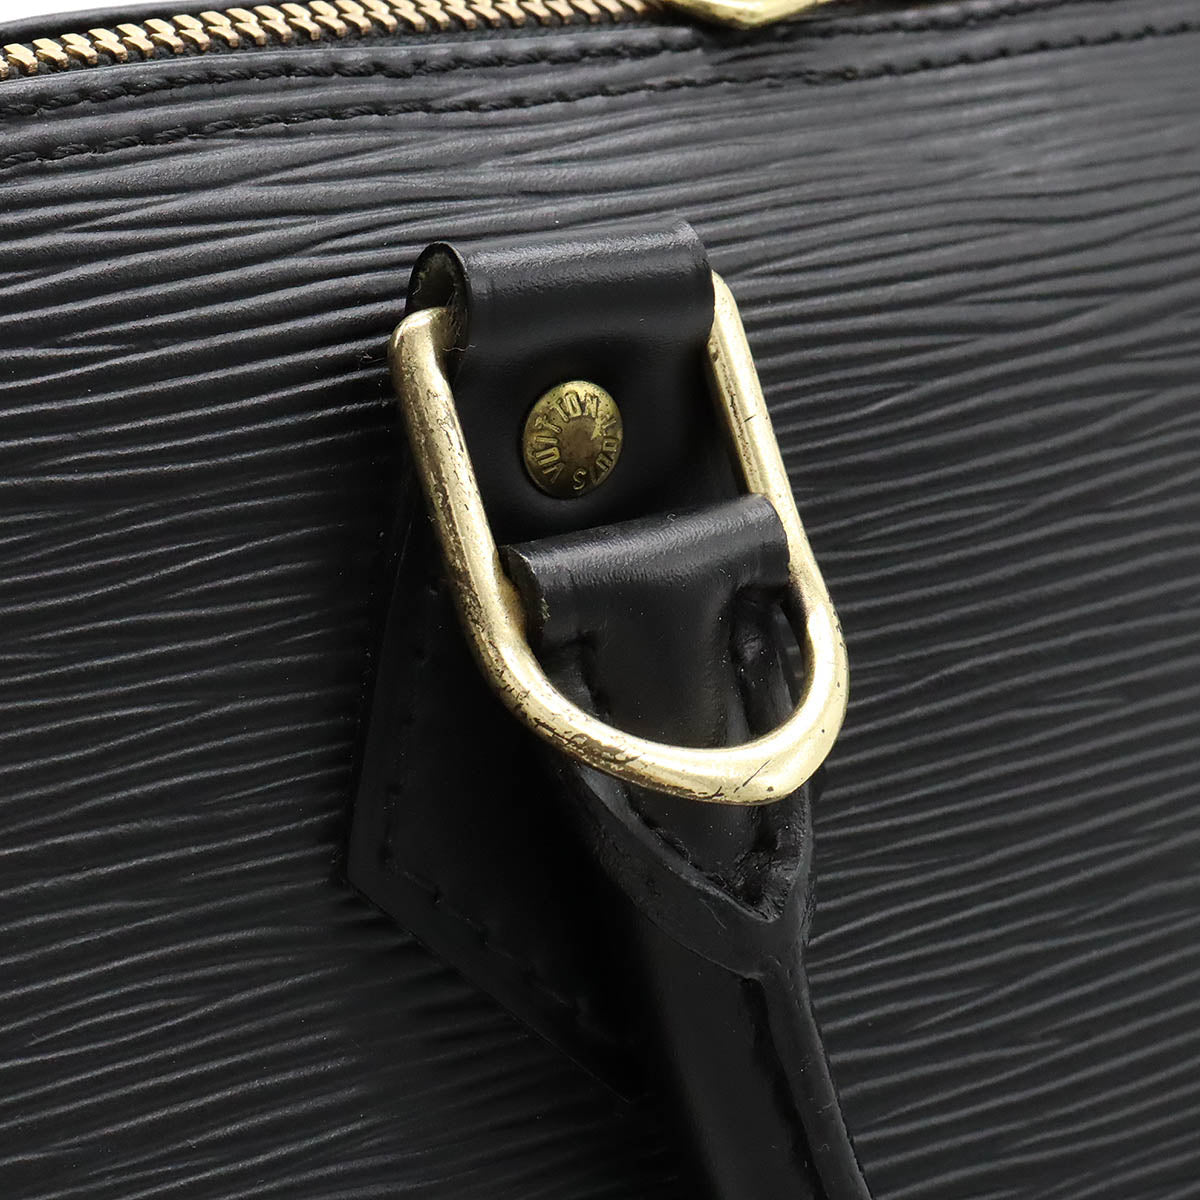 Louis Vuitton Epi Alma Handbag Noir M52142